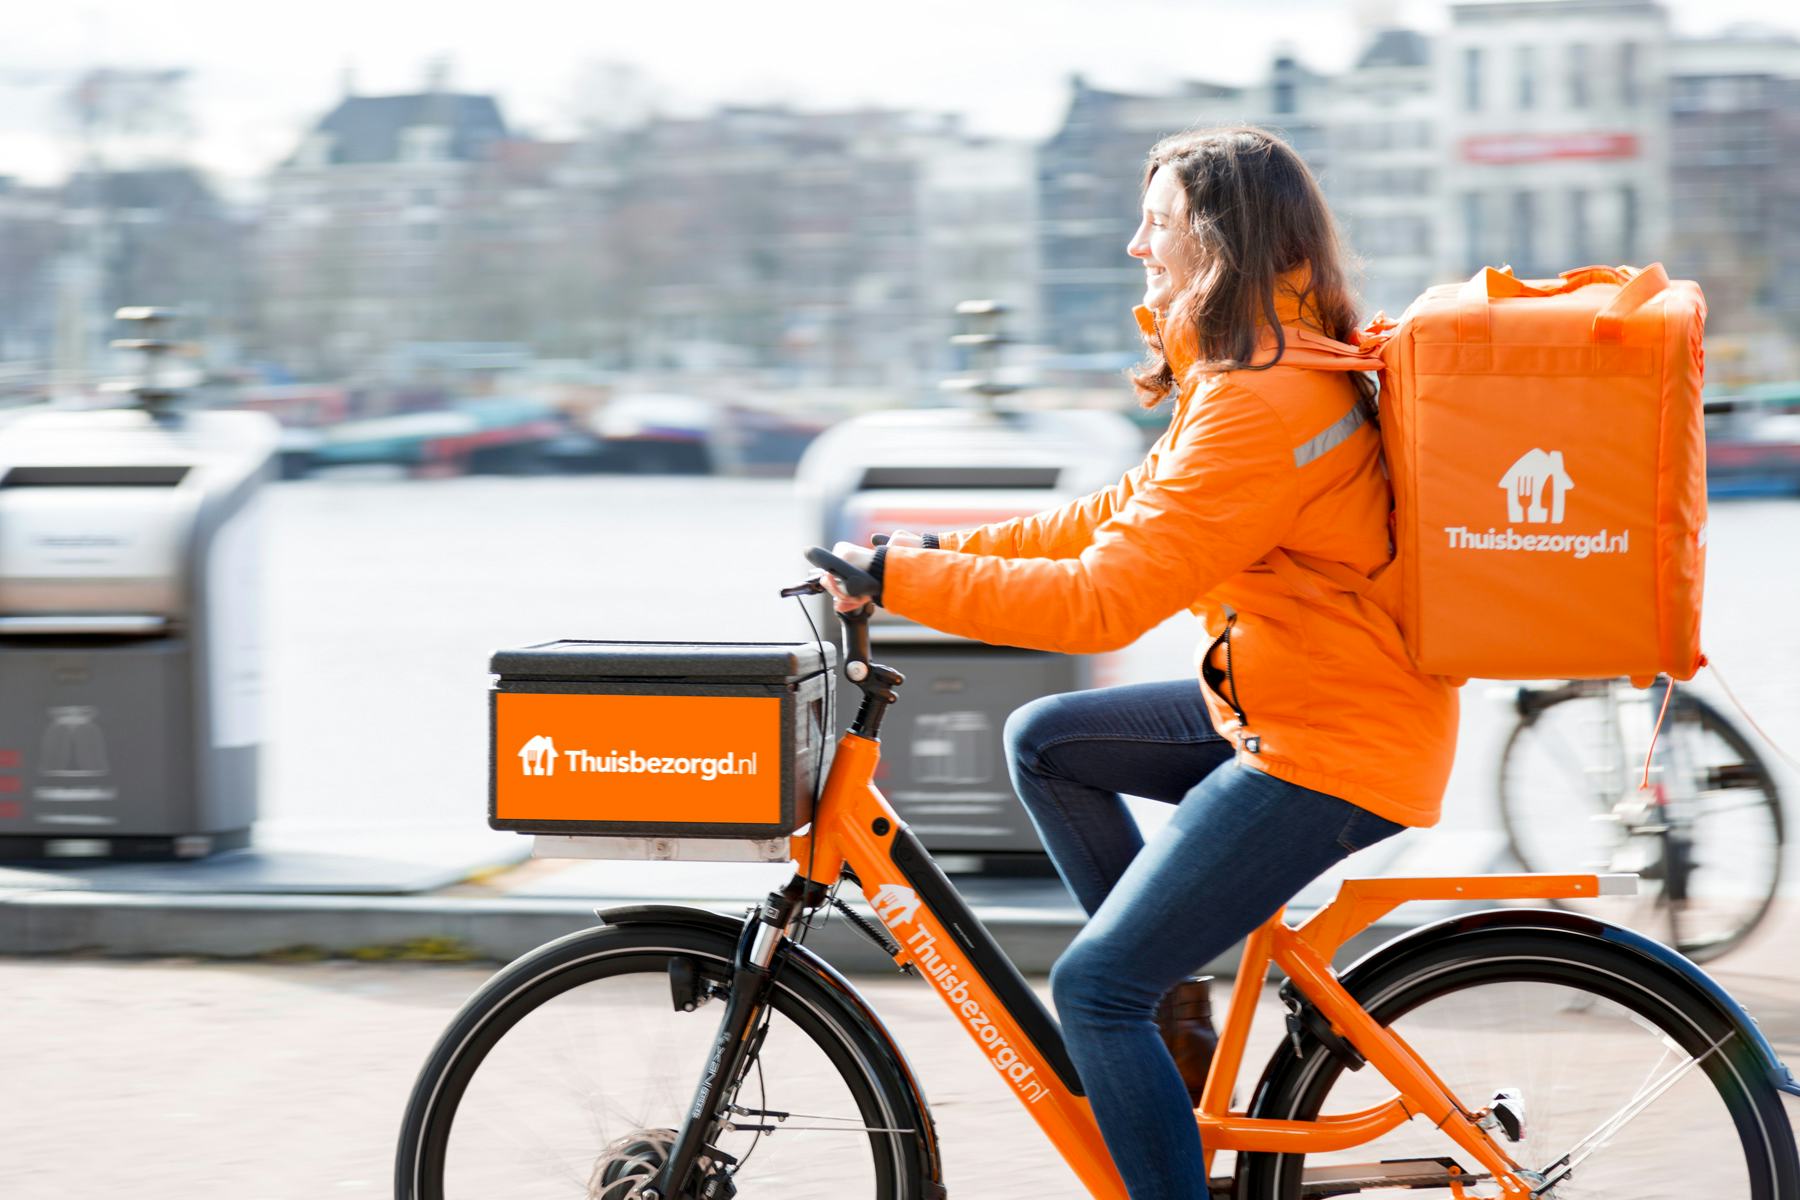 Thuisbezorgd.nl wil helft maaltijden bezorgen met elektrisch vervoer